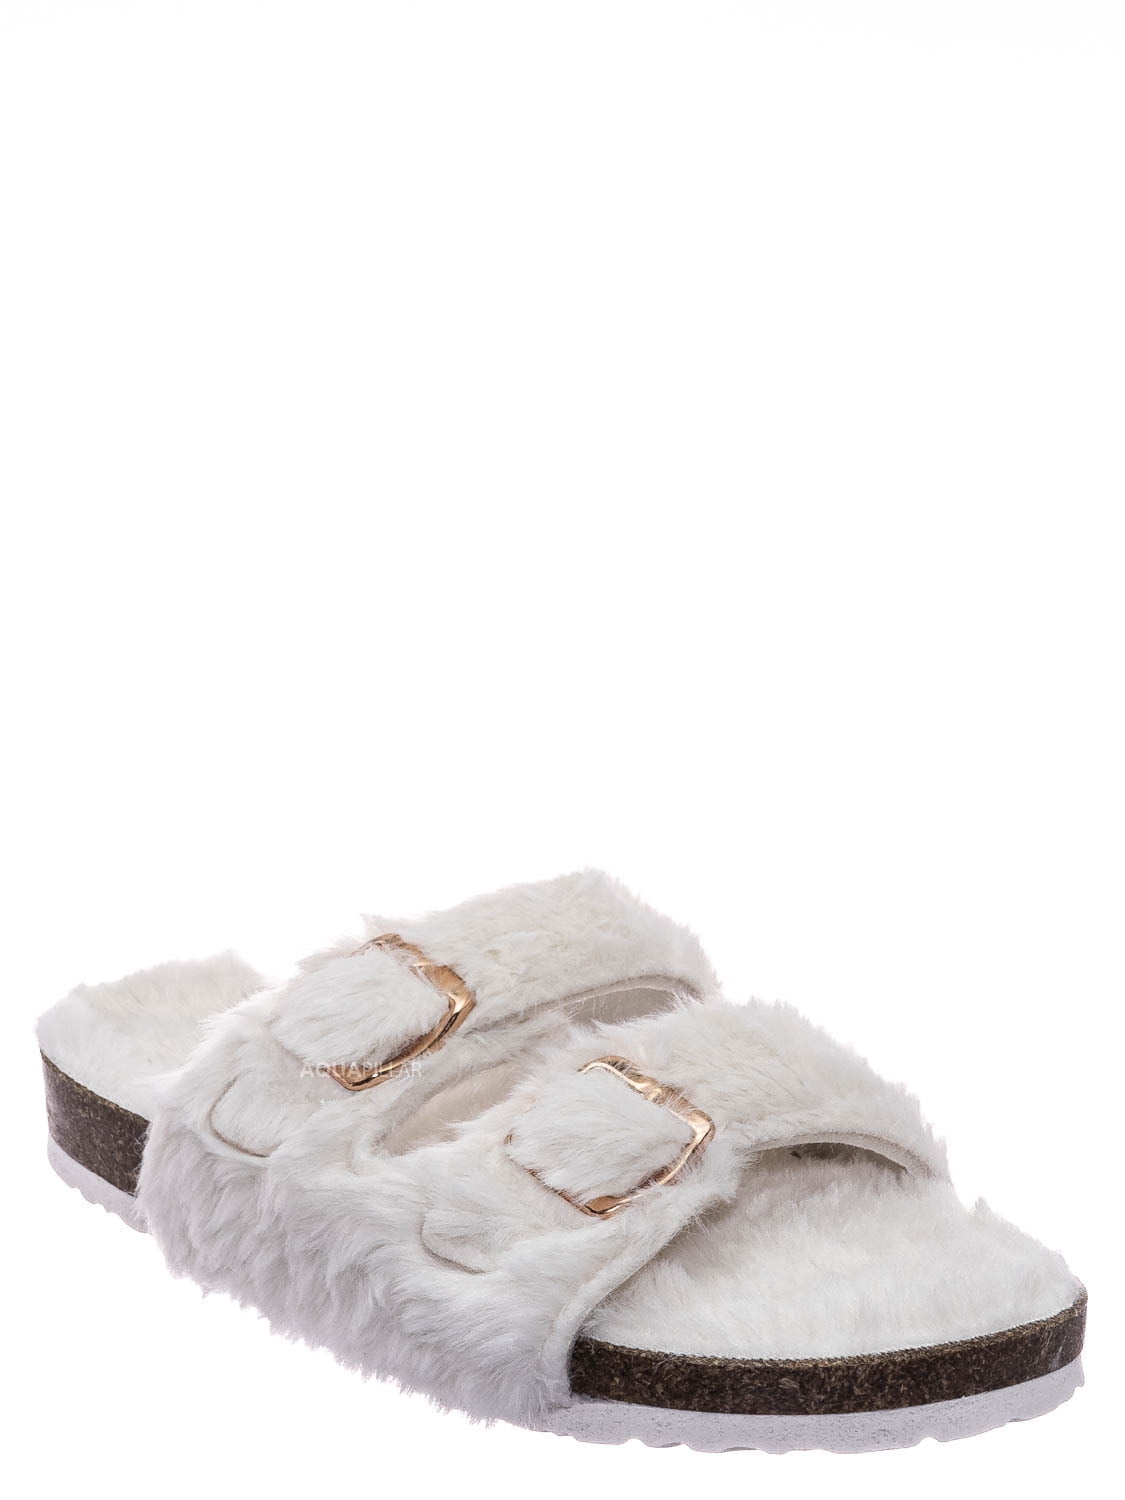 walmart fuzzy slippers